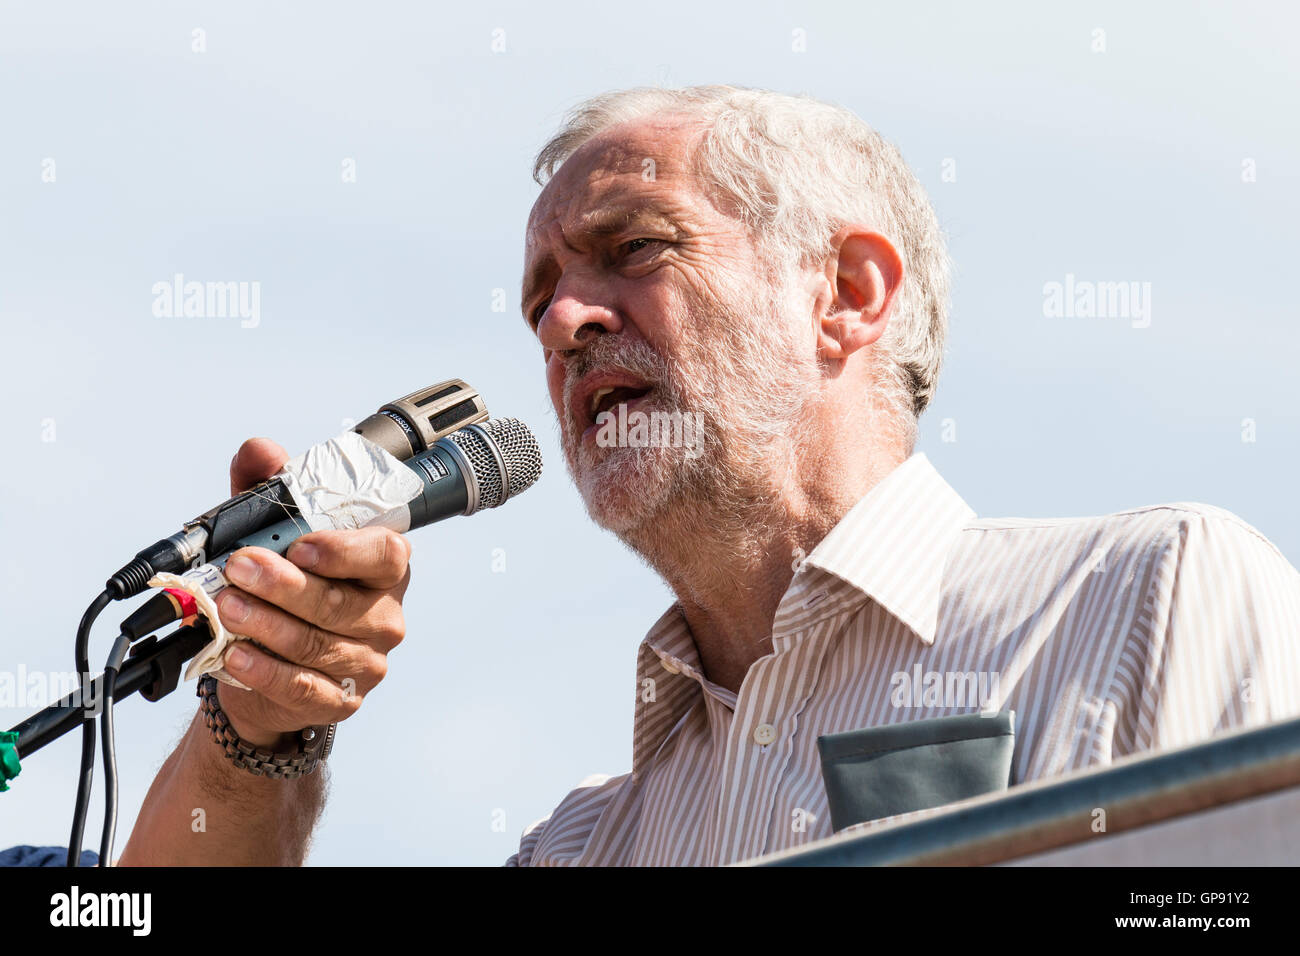 Jeremy Corbyn, Regno Unito leader dell opposizione e capo del partito laburista, Affrontare un rally a Ramsgate. Basso angolo di visione da vicino della faccia come egli parla nel microfono. Foto Stock